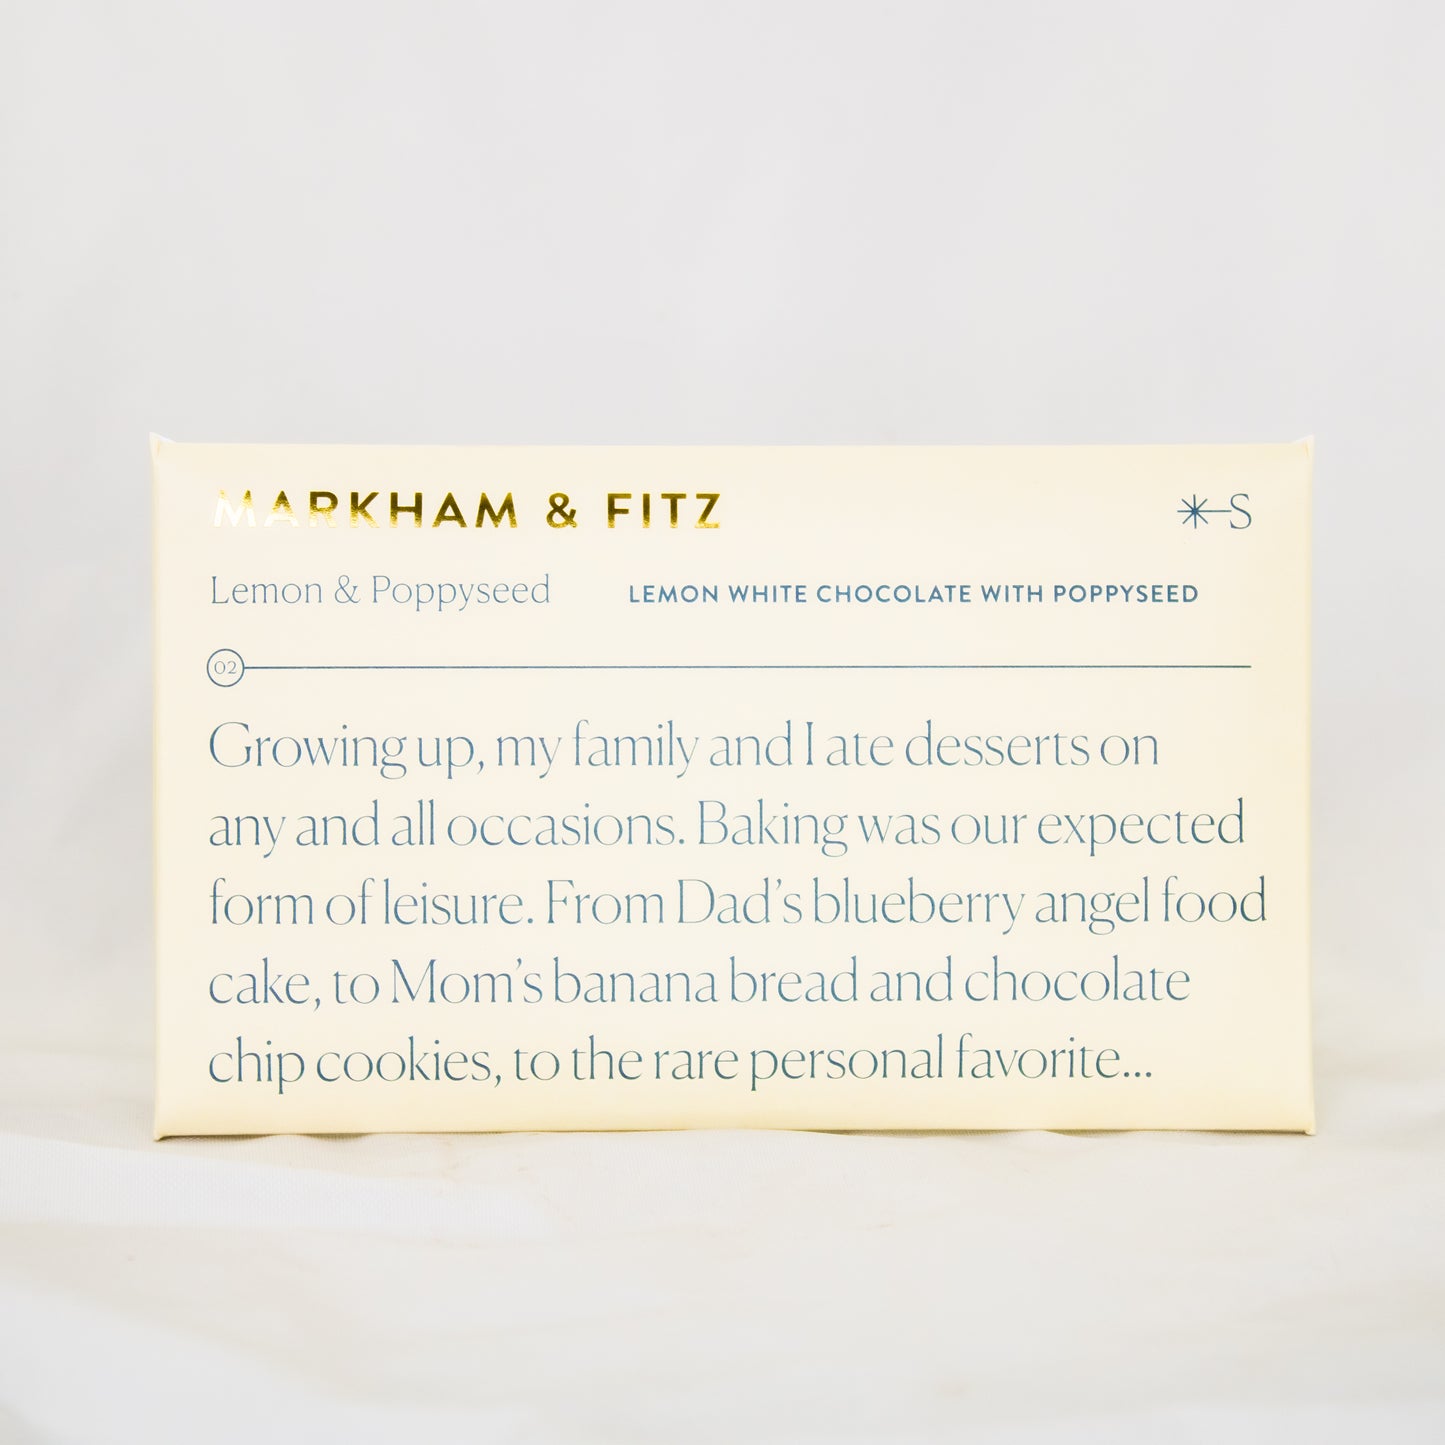 Markham & Fitz - Lemon Poppyseed